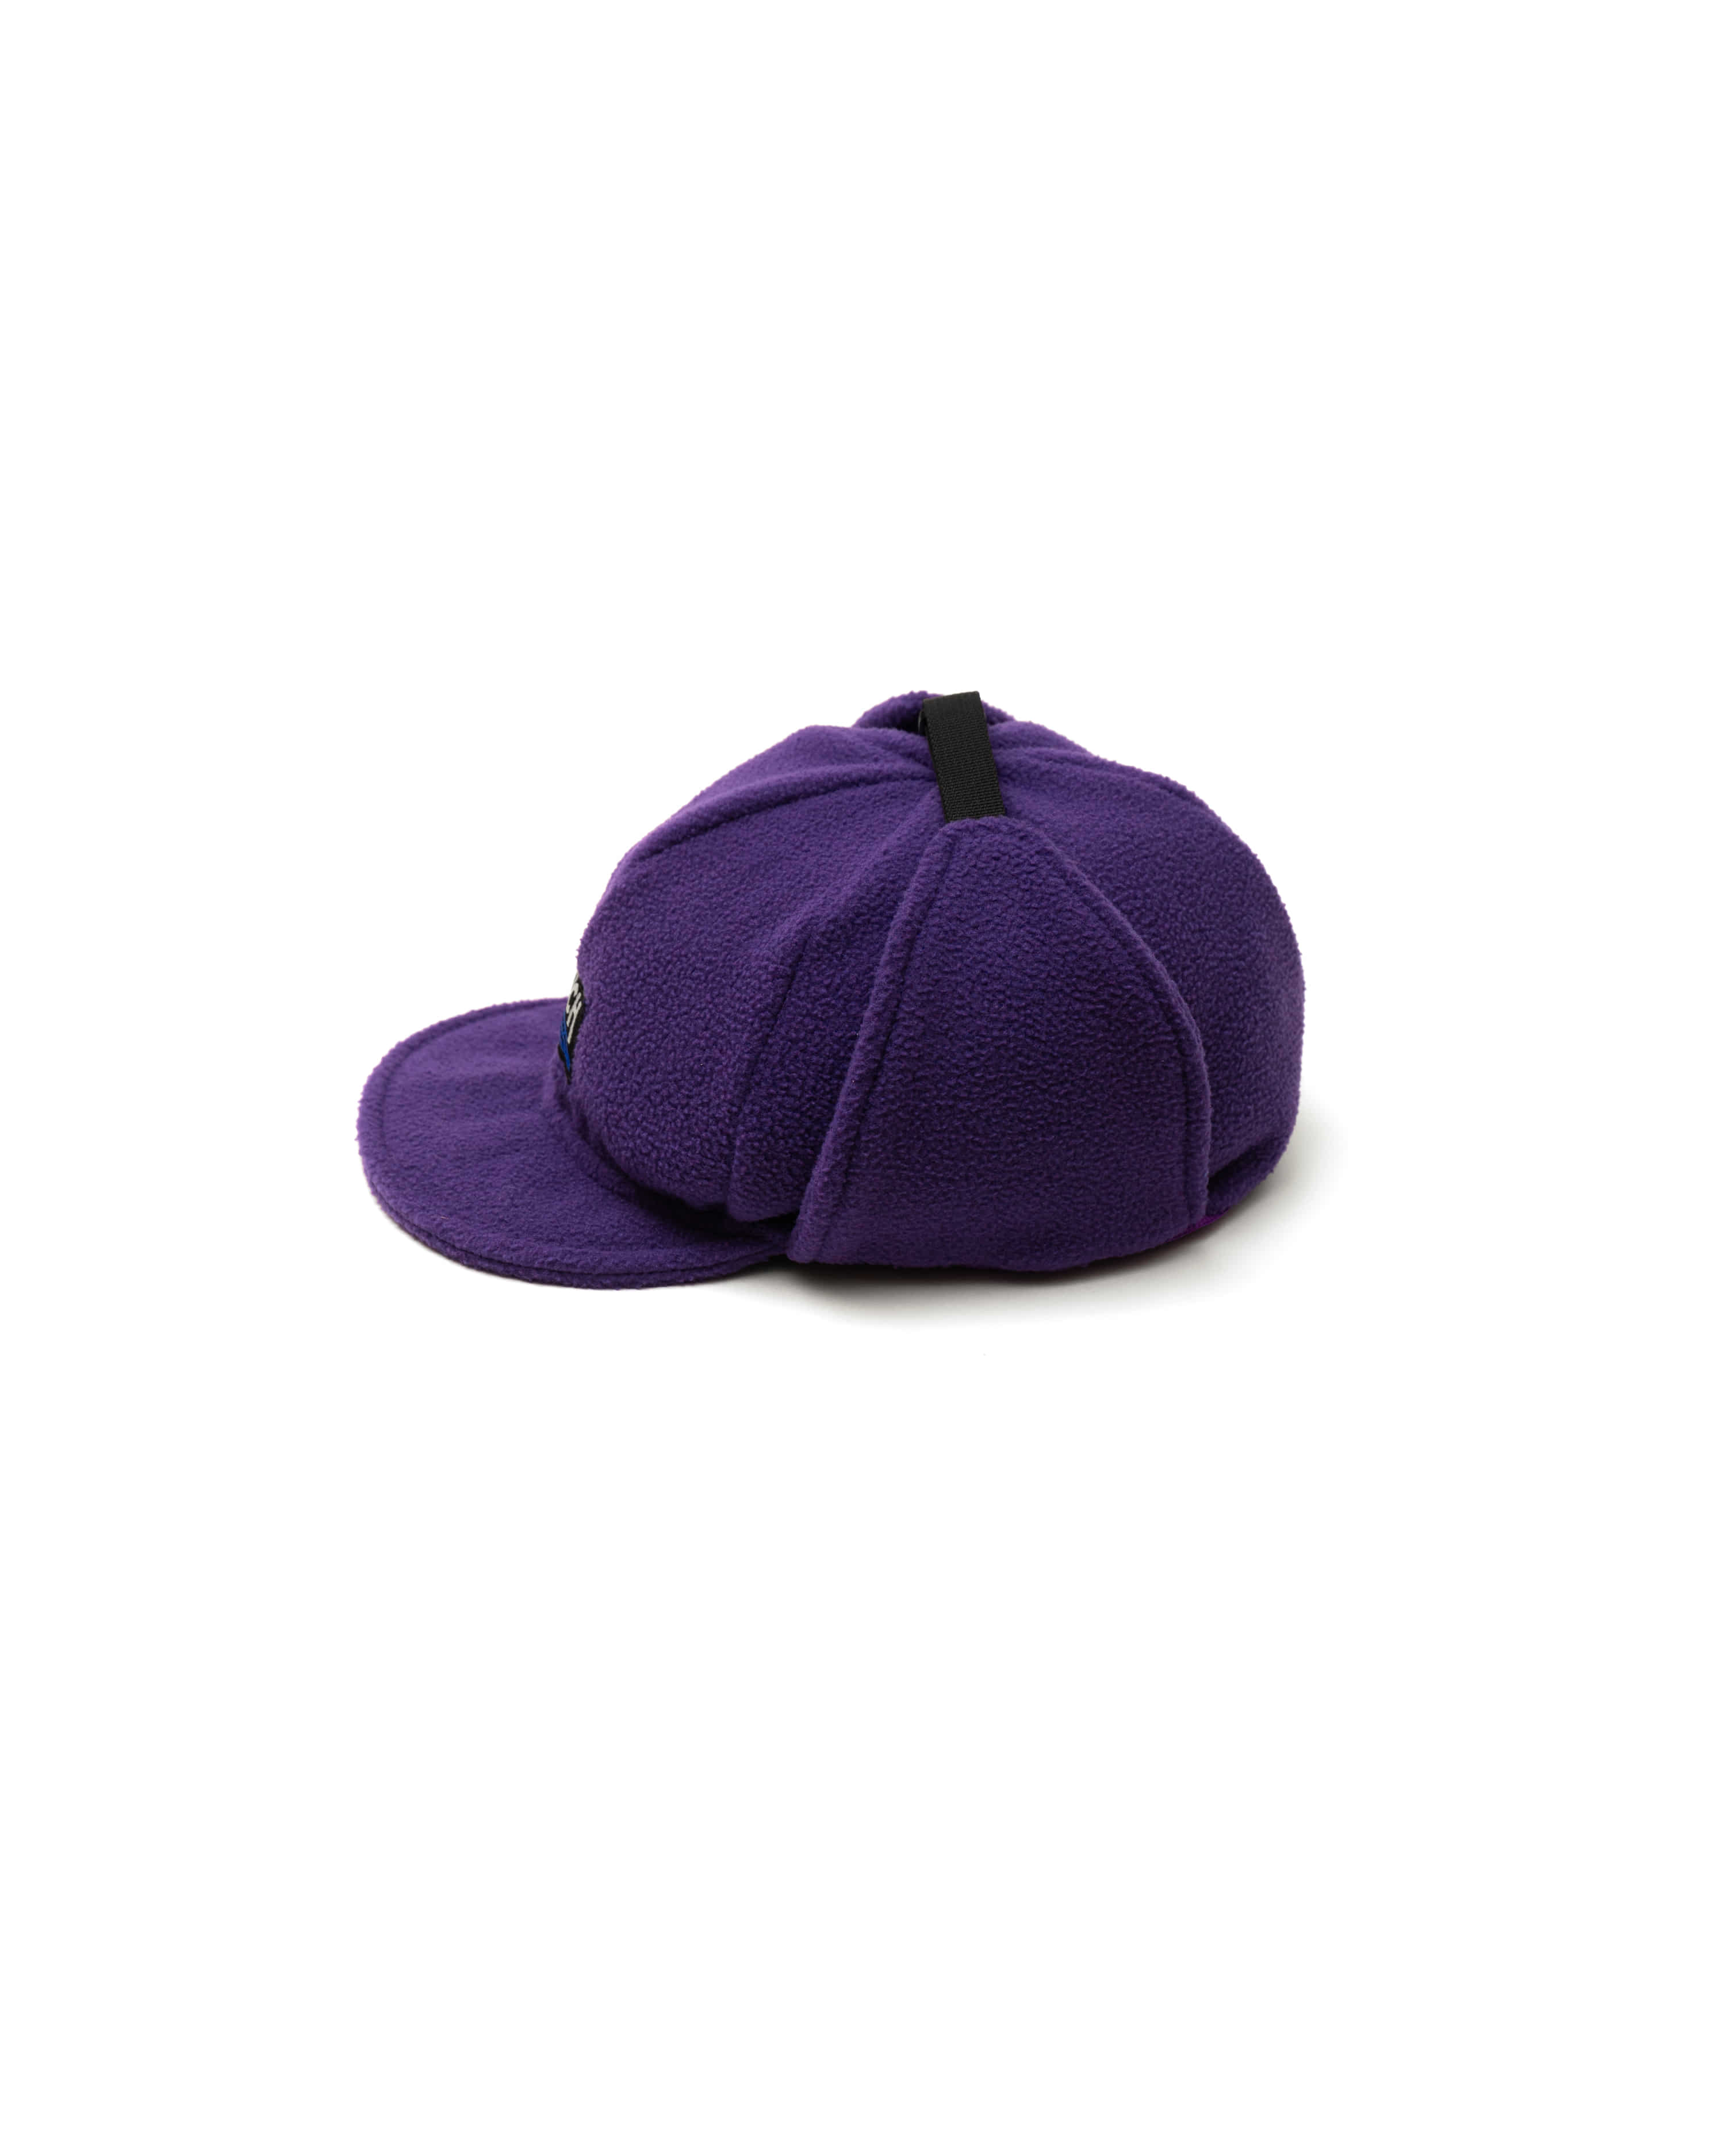 [New Ver.] Basecamp - Purple (Fleece)